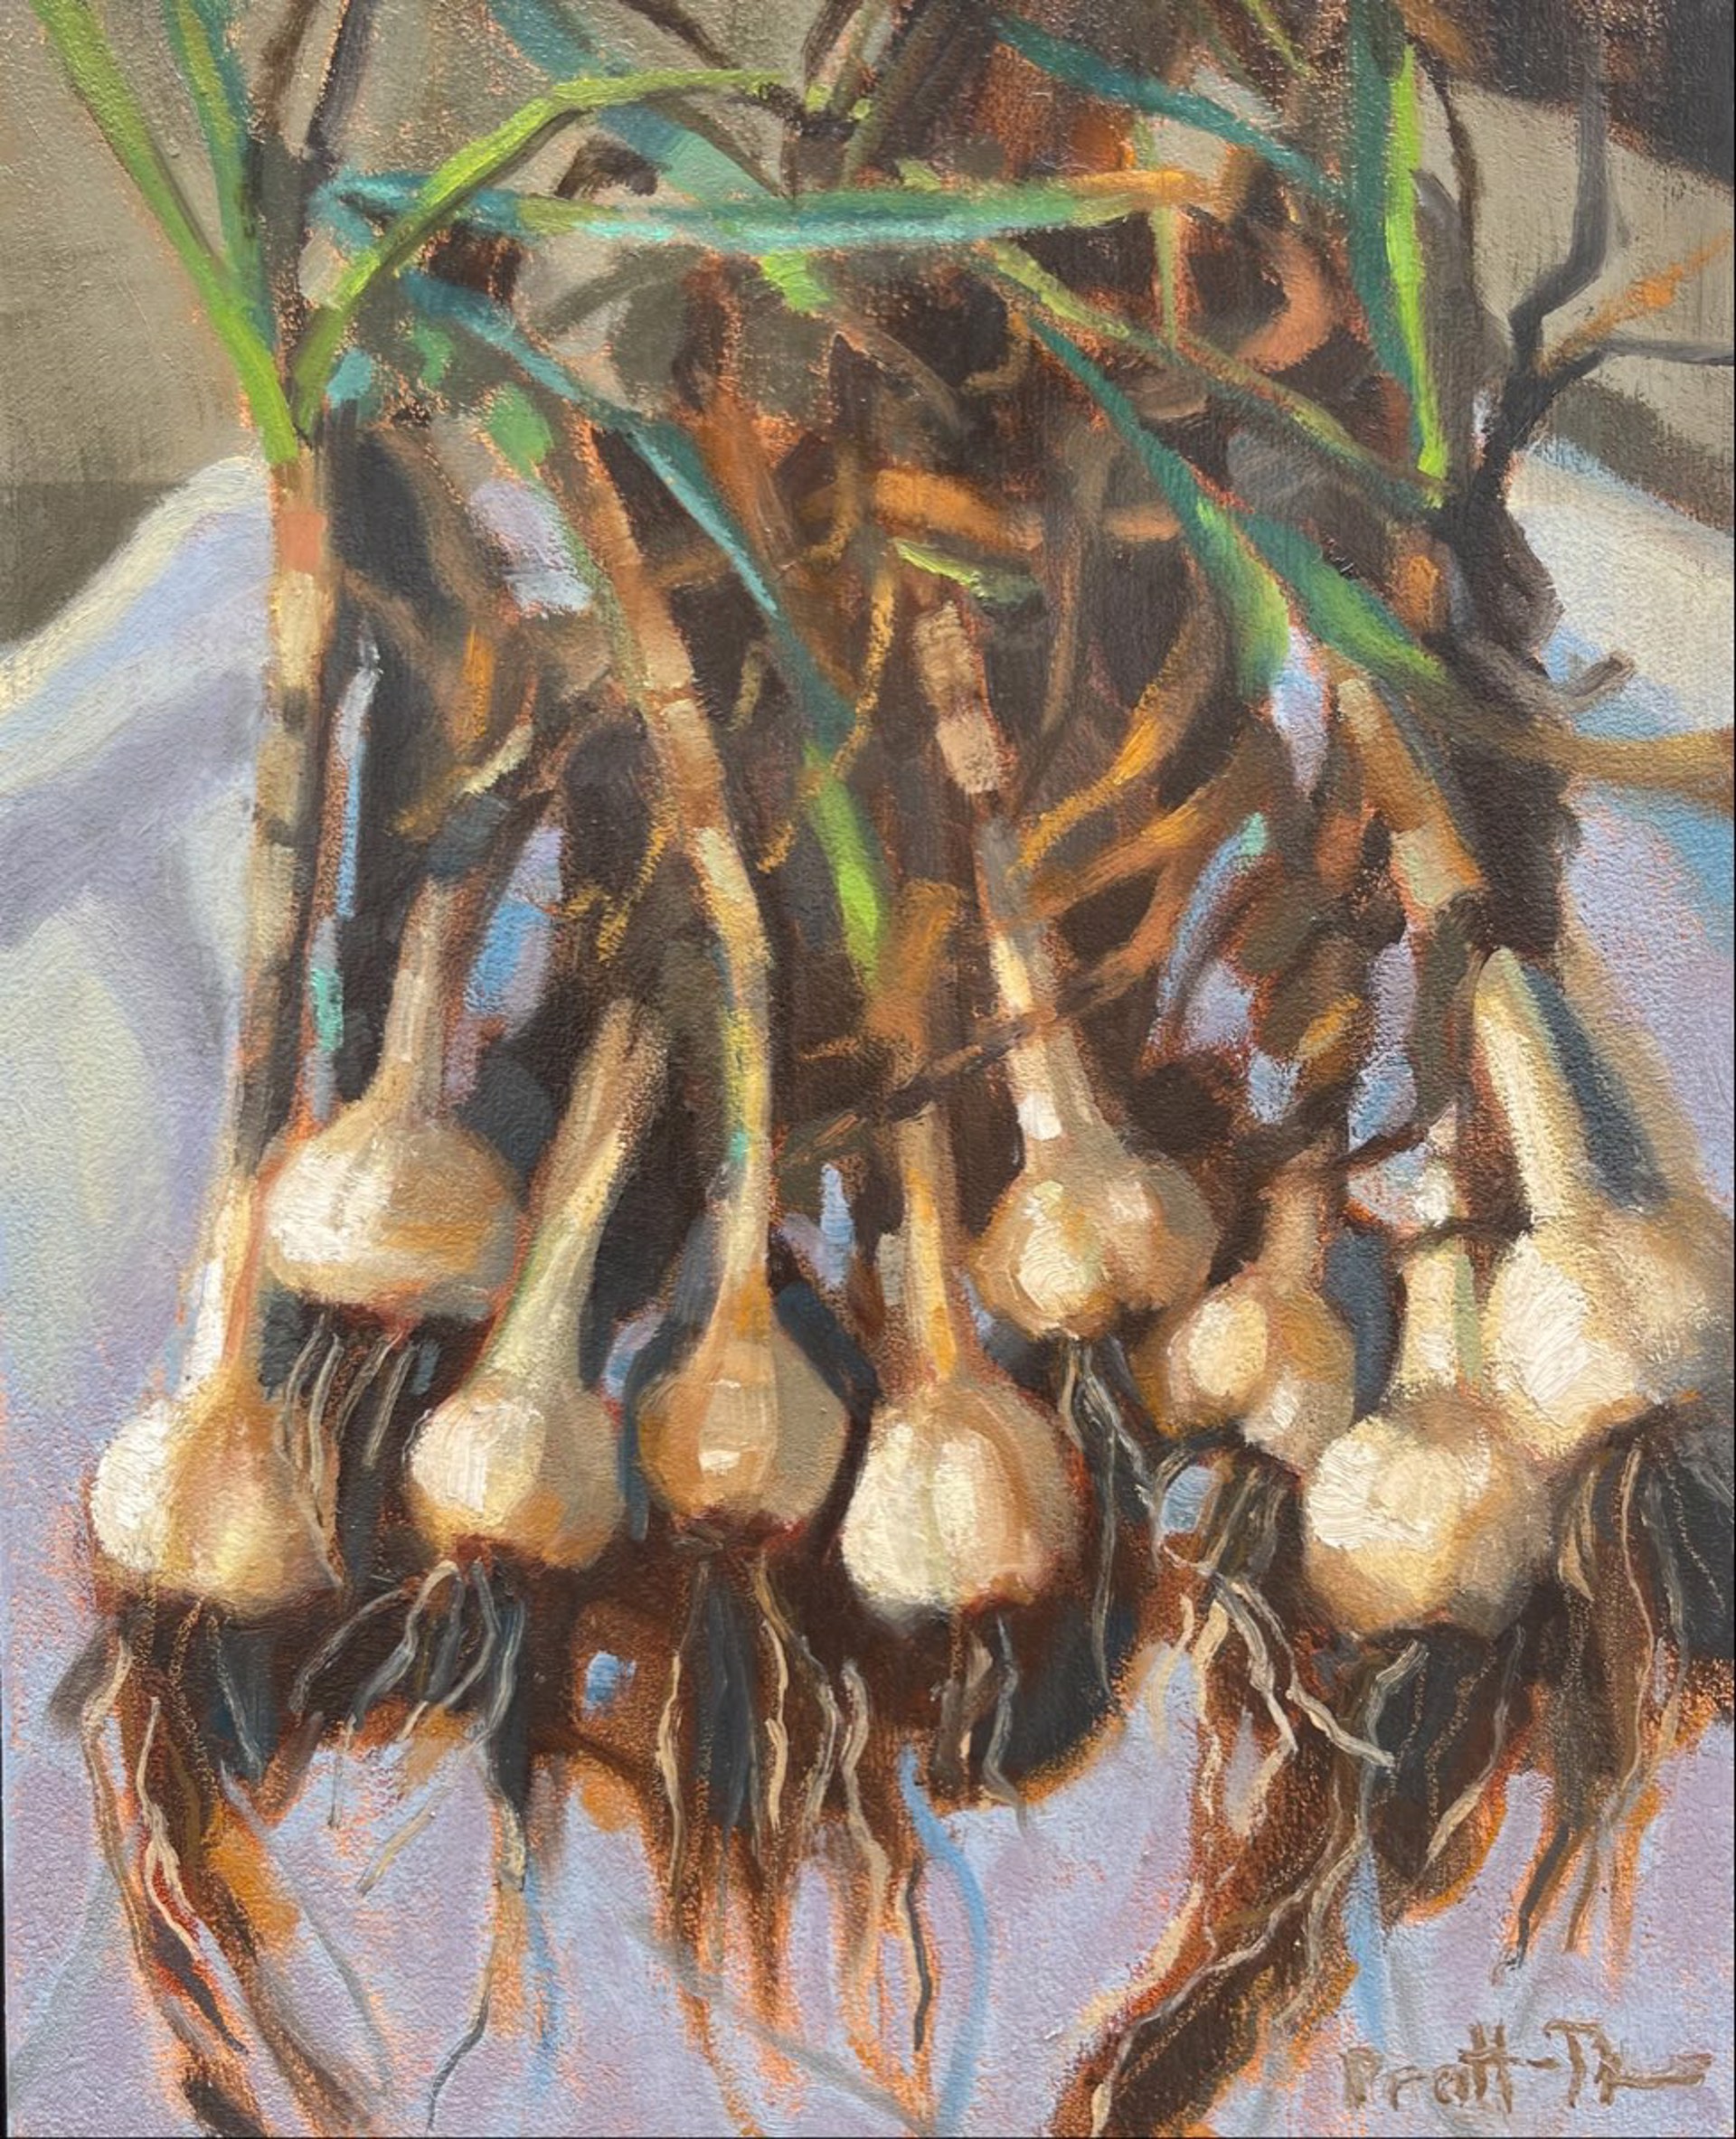 Gathered Garlic by Leslie Pratt-Thomas